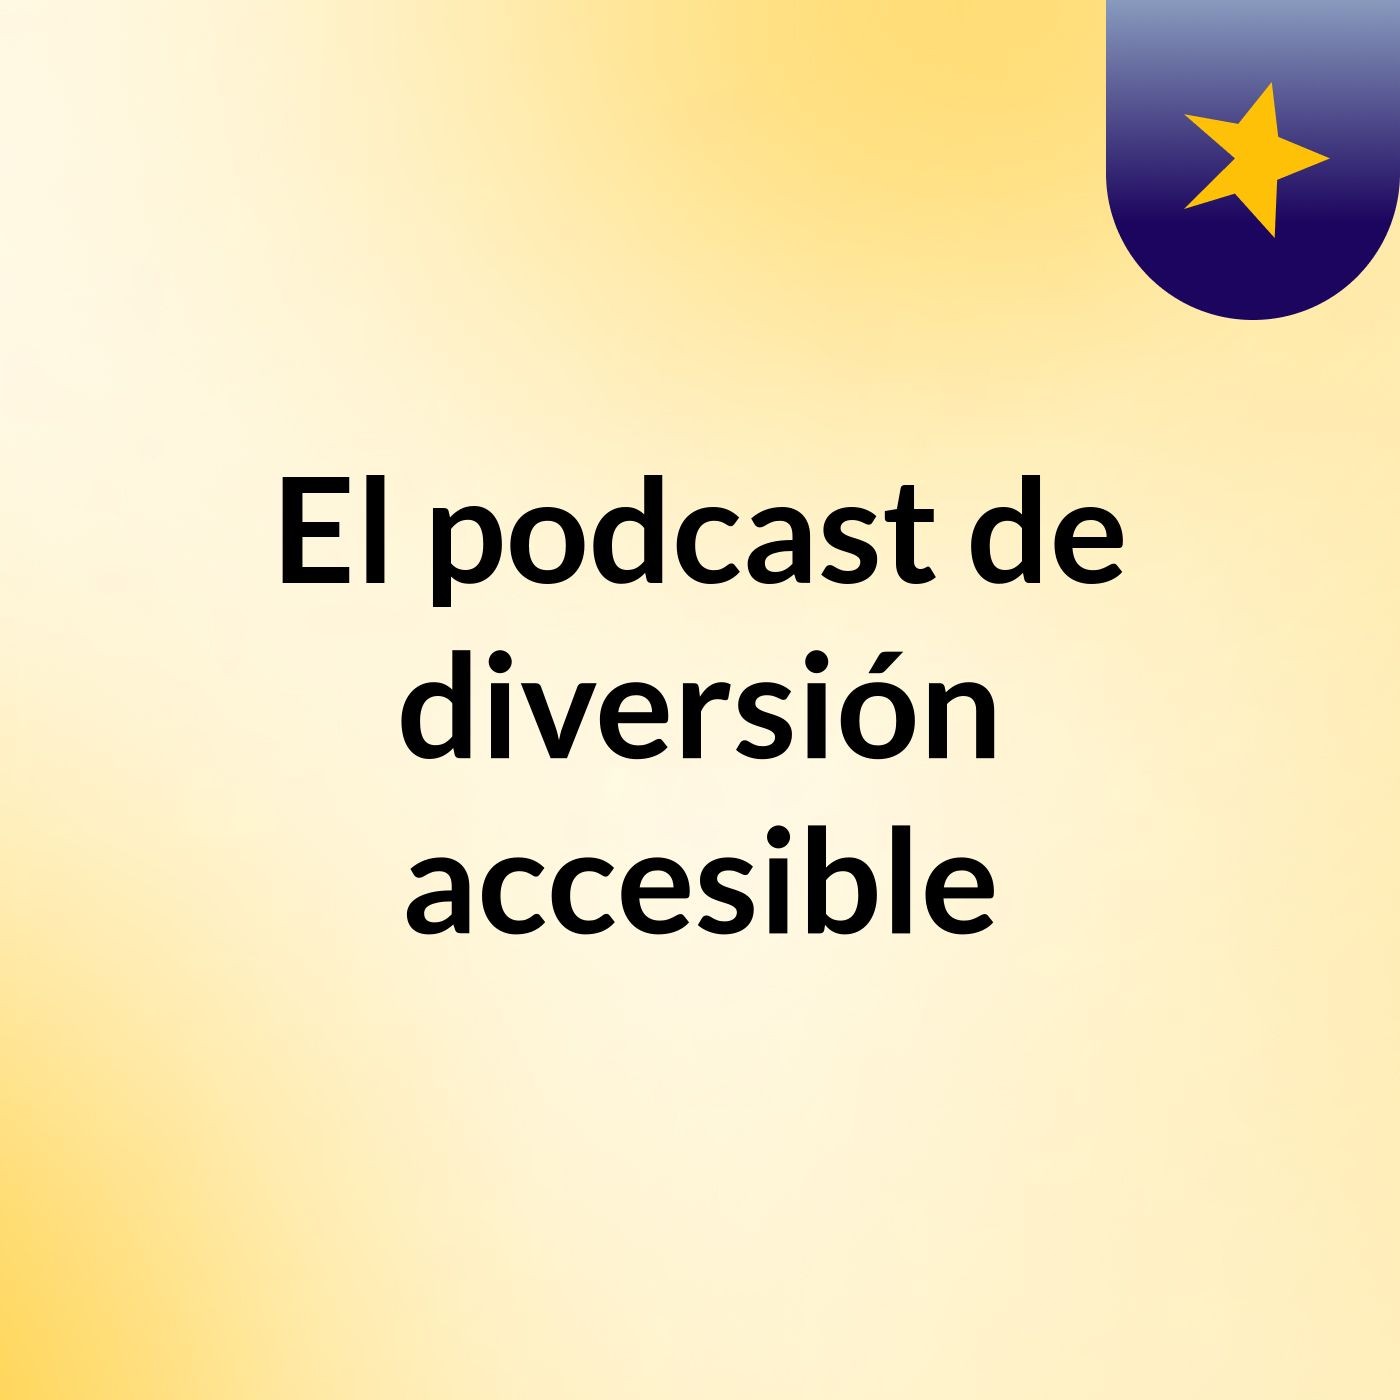 El podcast de diversión accesible